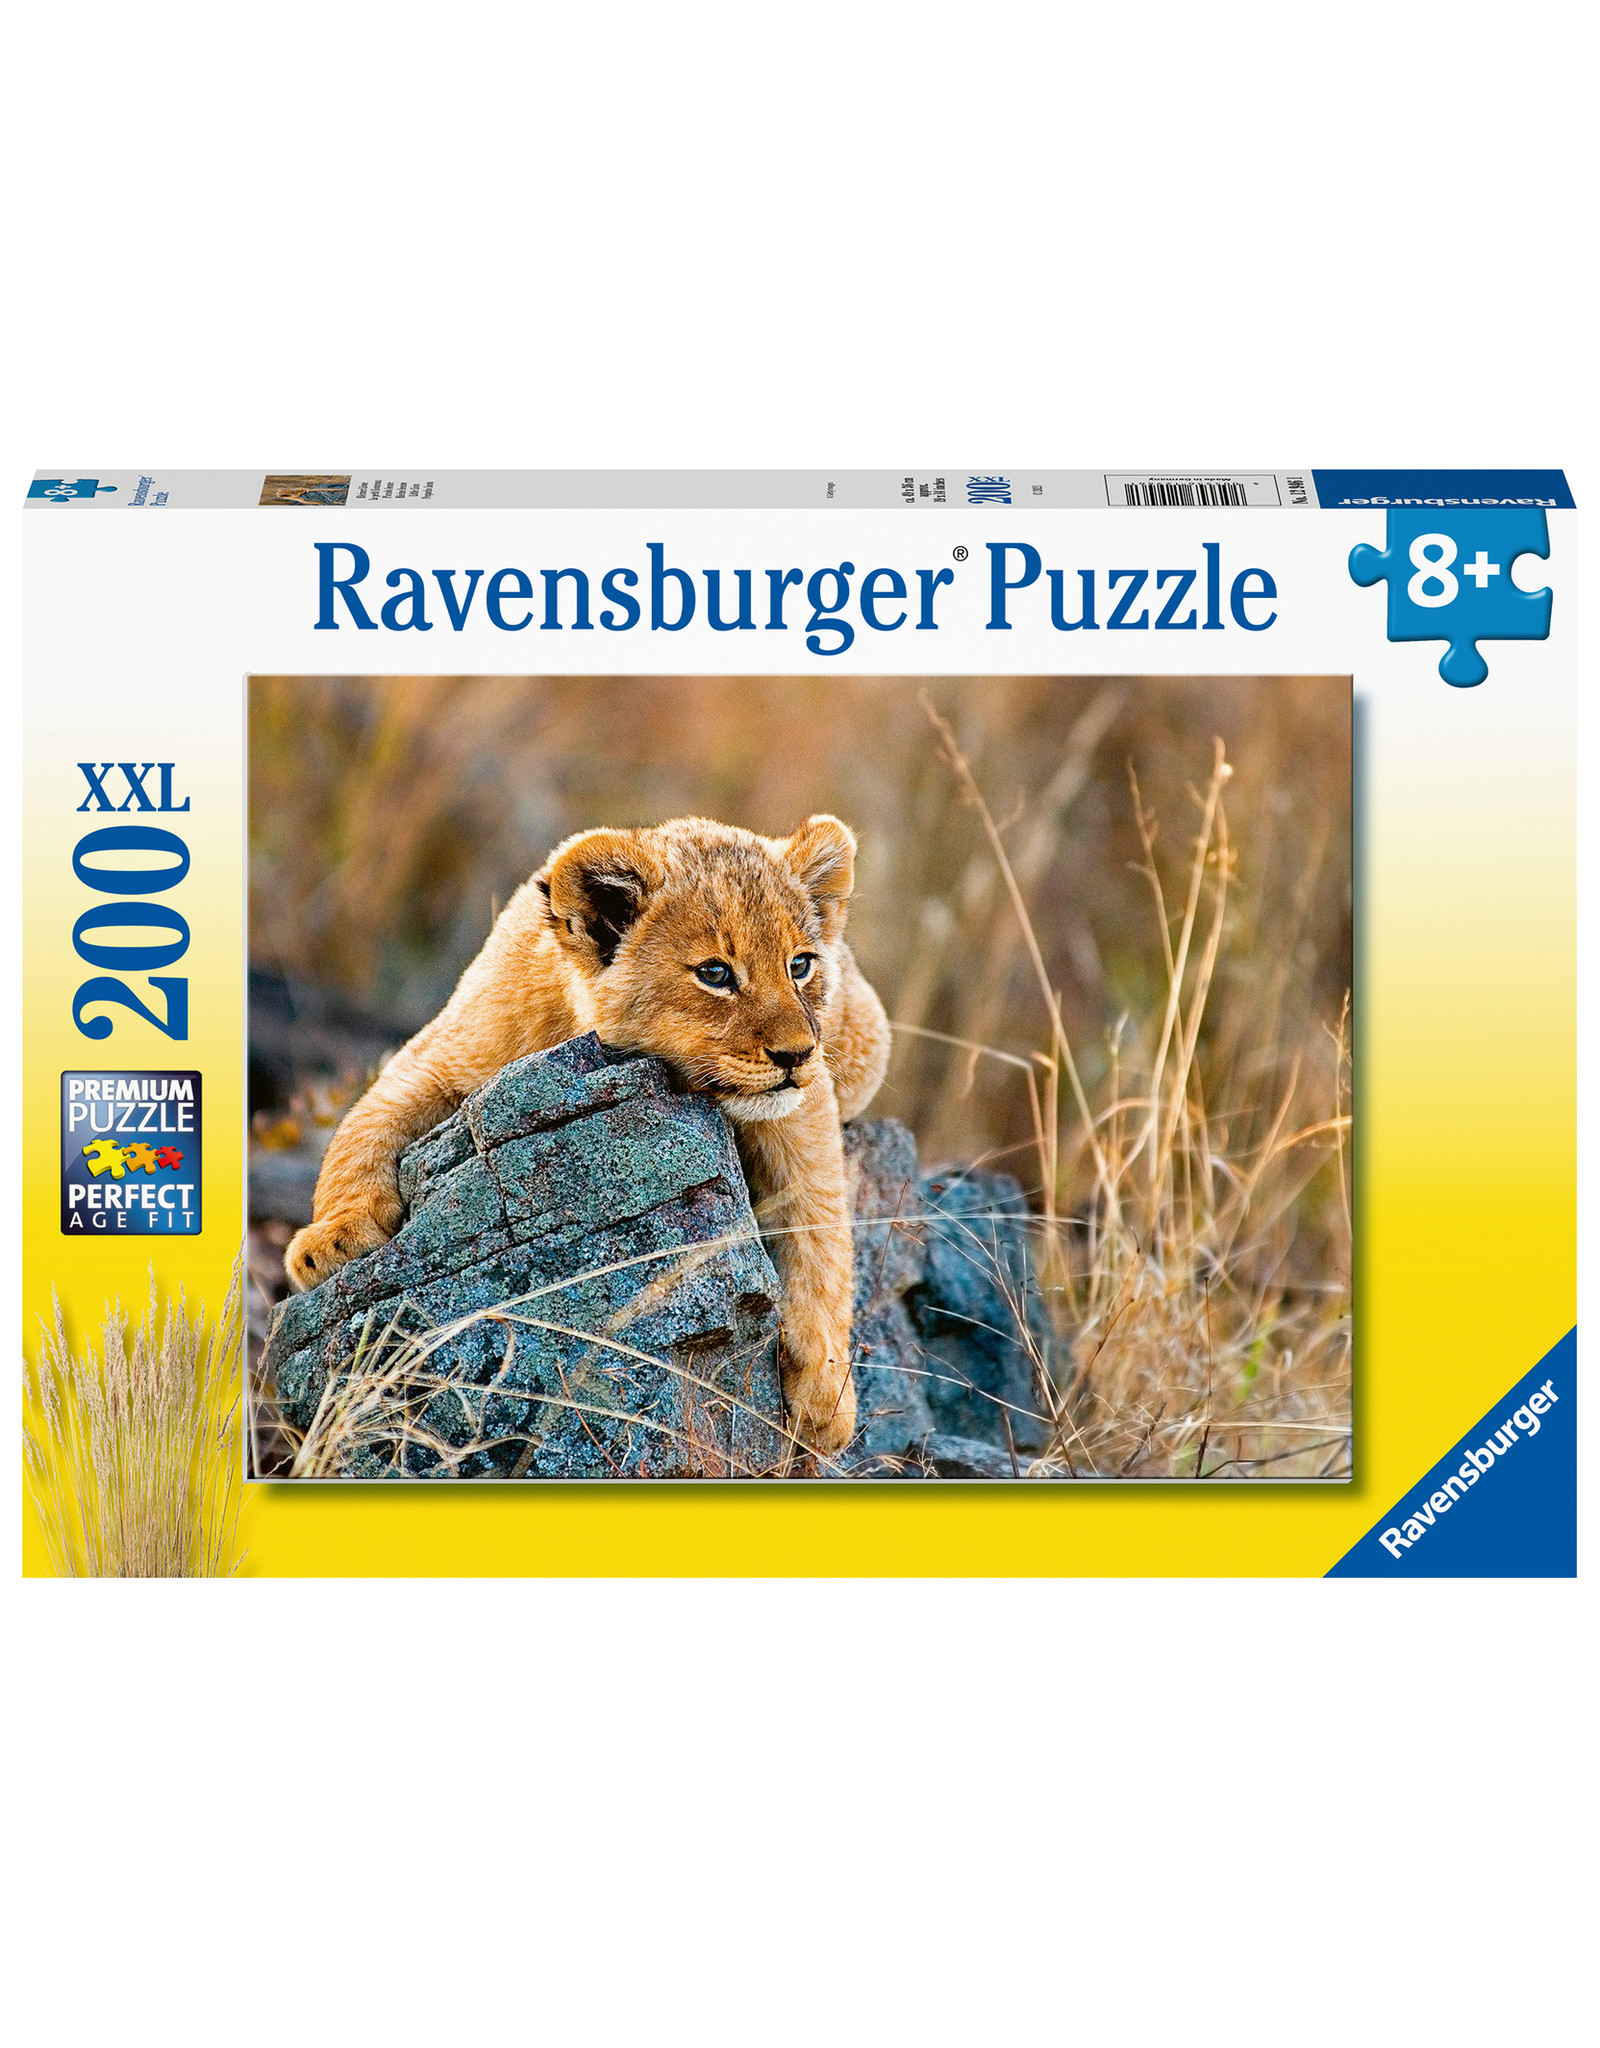 Ravensburger Ravensburger Puzzel 129461 Kleine Leeuw (200 XXL Stukjes)